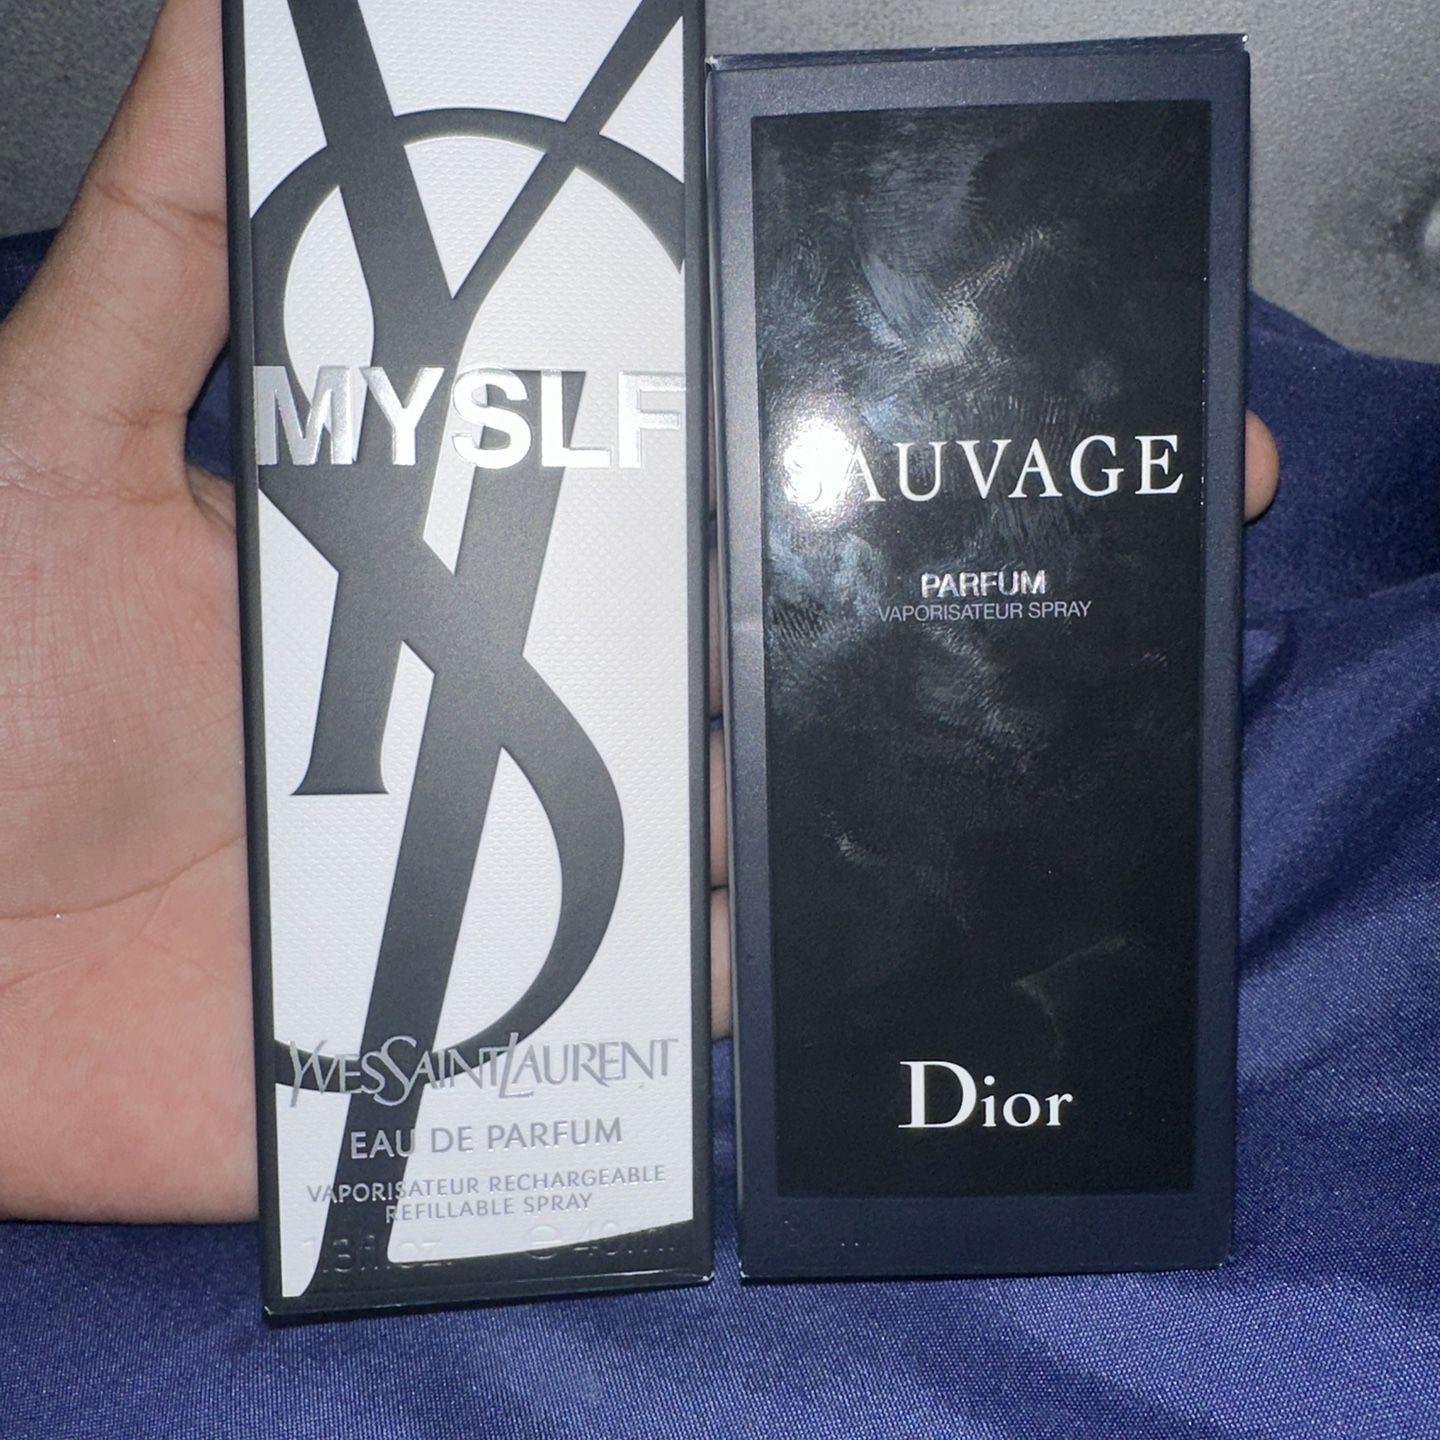 Suavage Dior Cologne